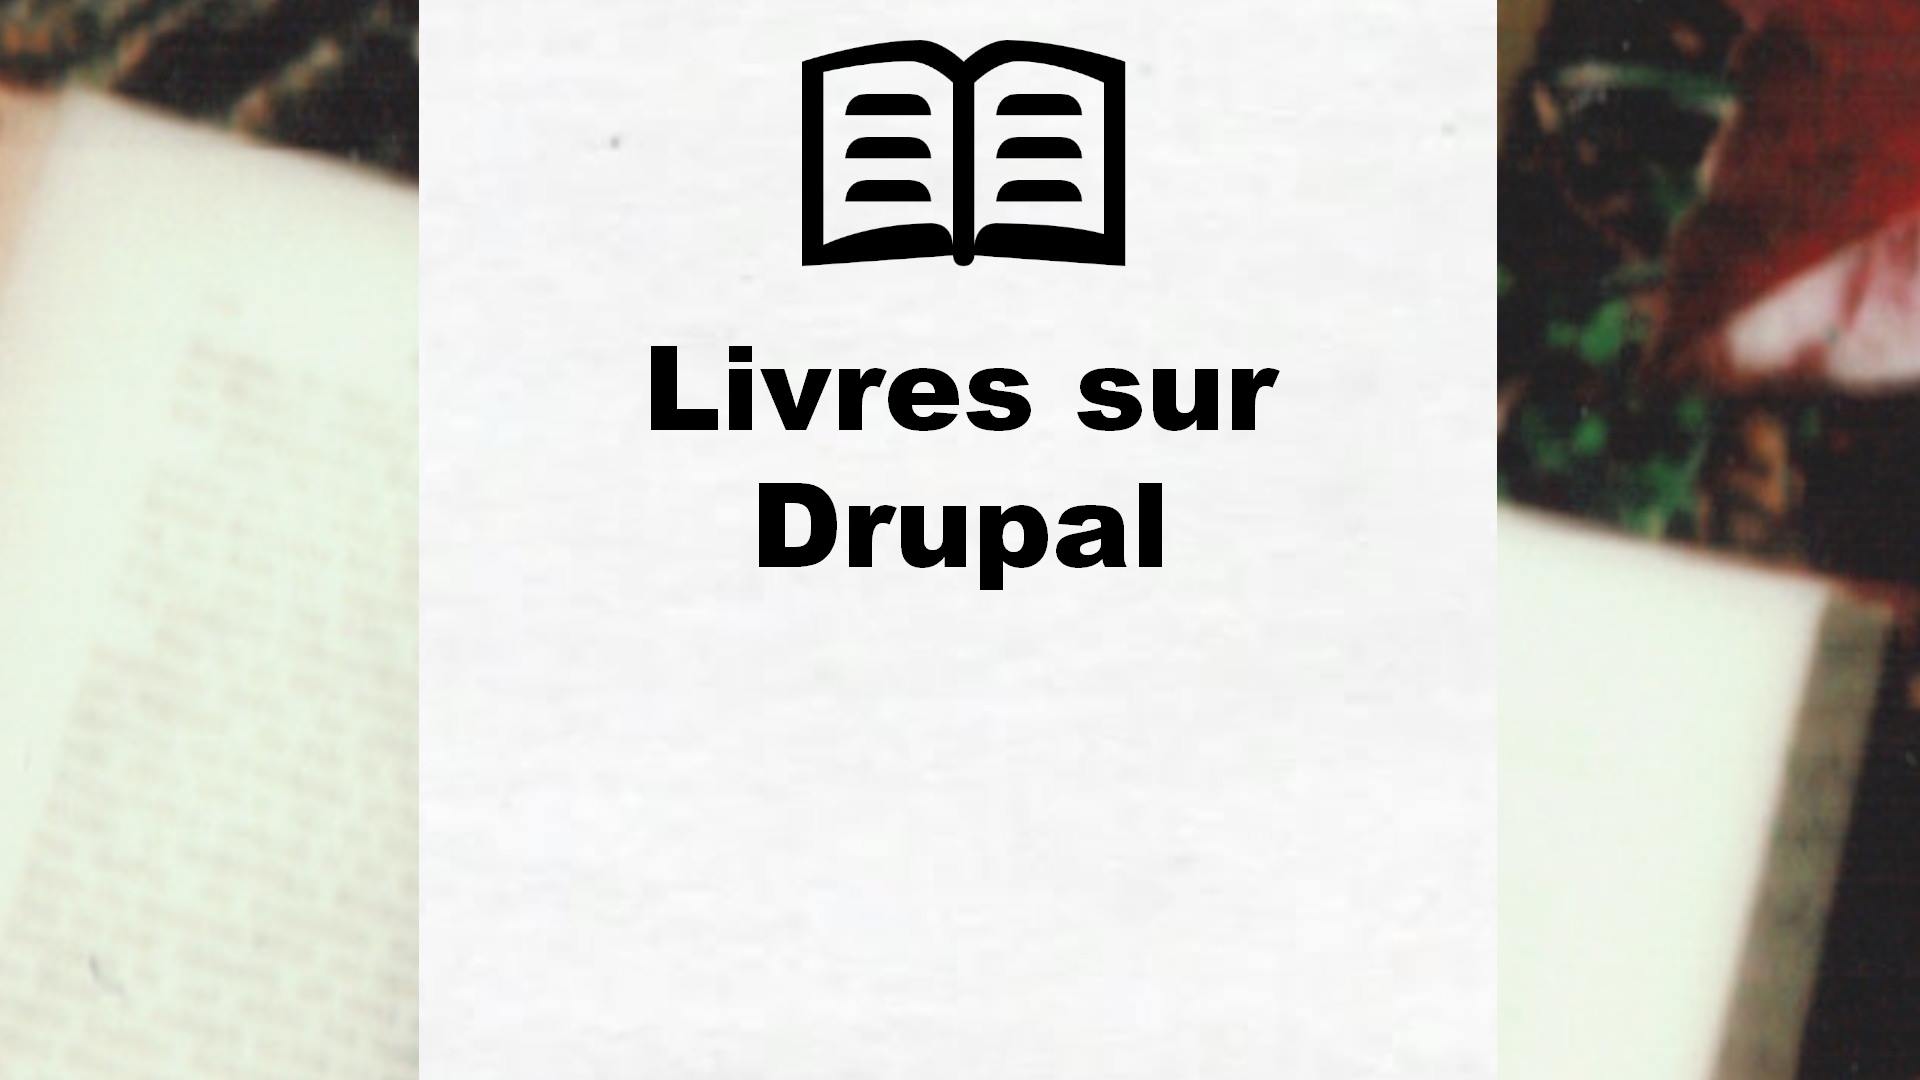 Livres sur Drupal